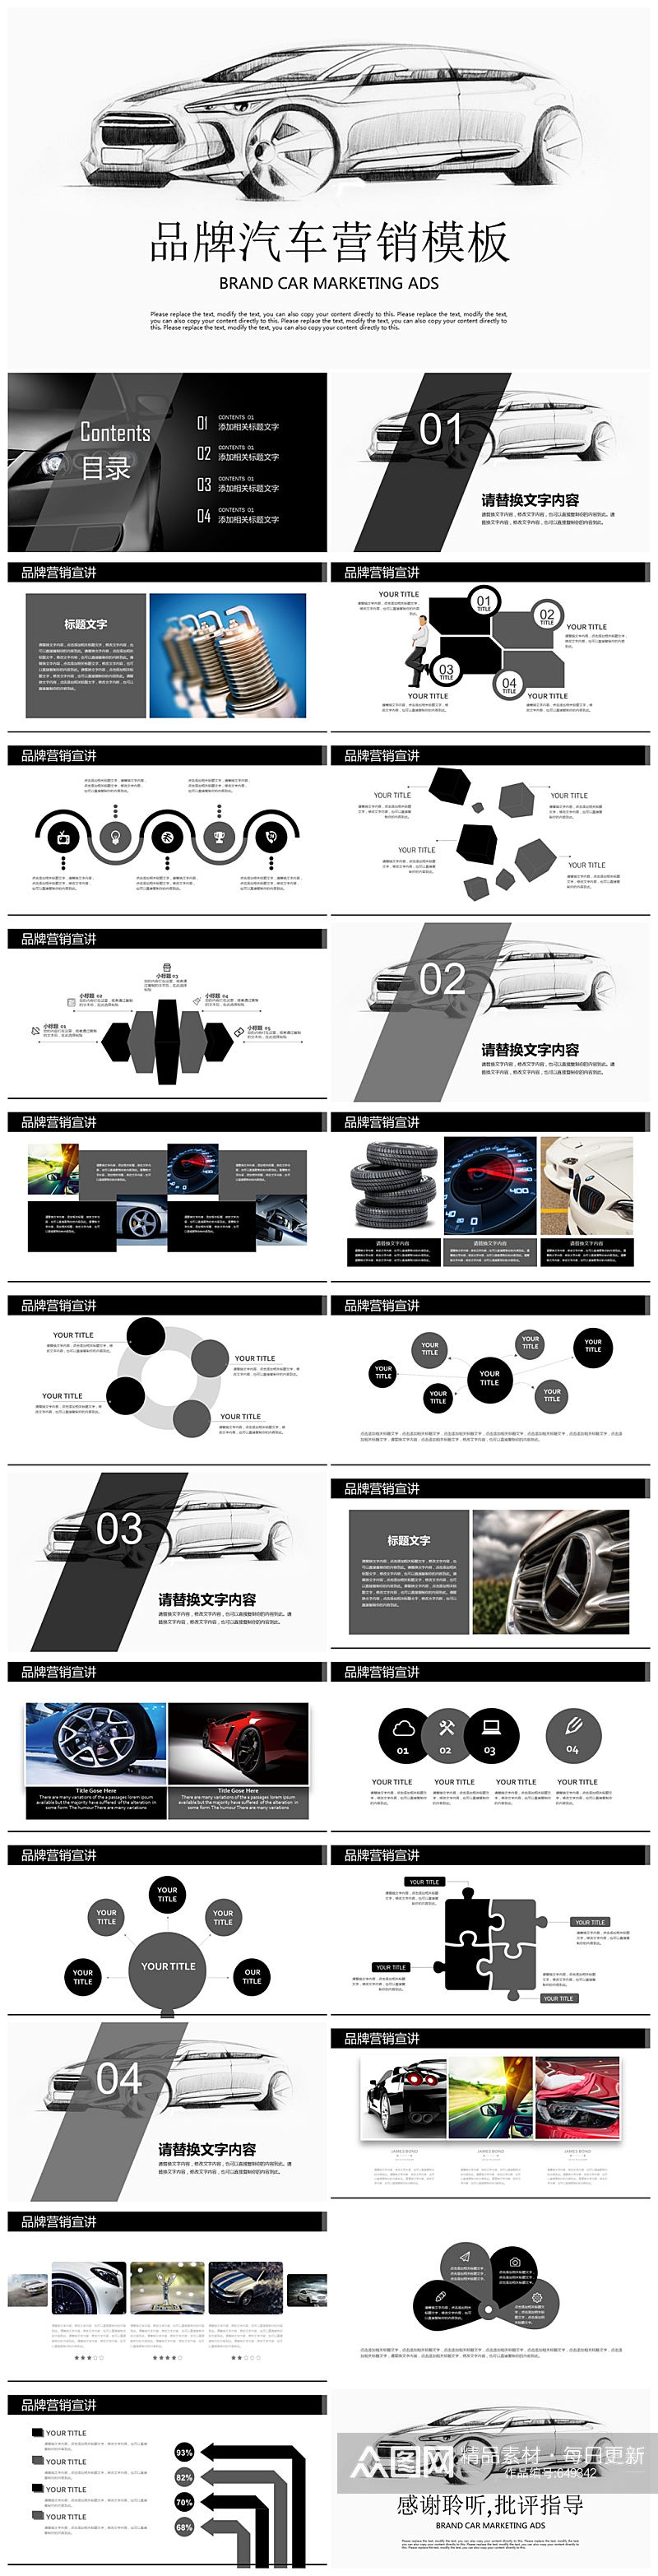 品牌汽车营销方案PPT模板素材